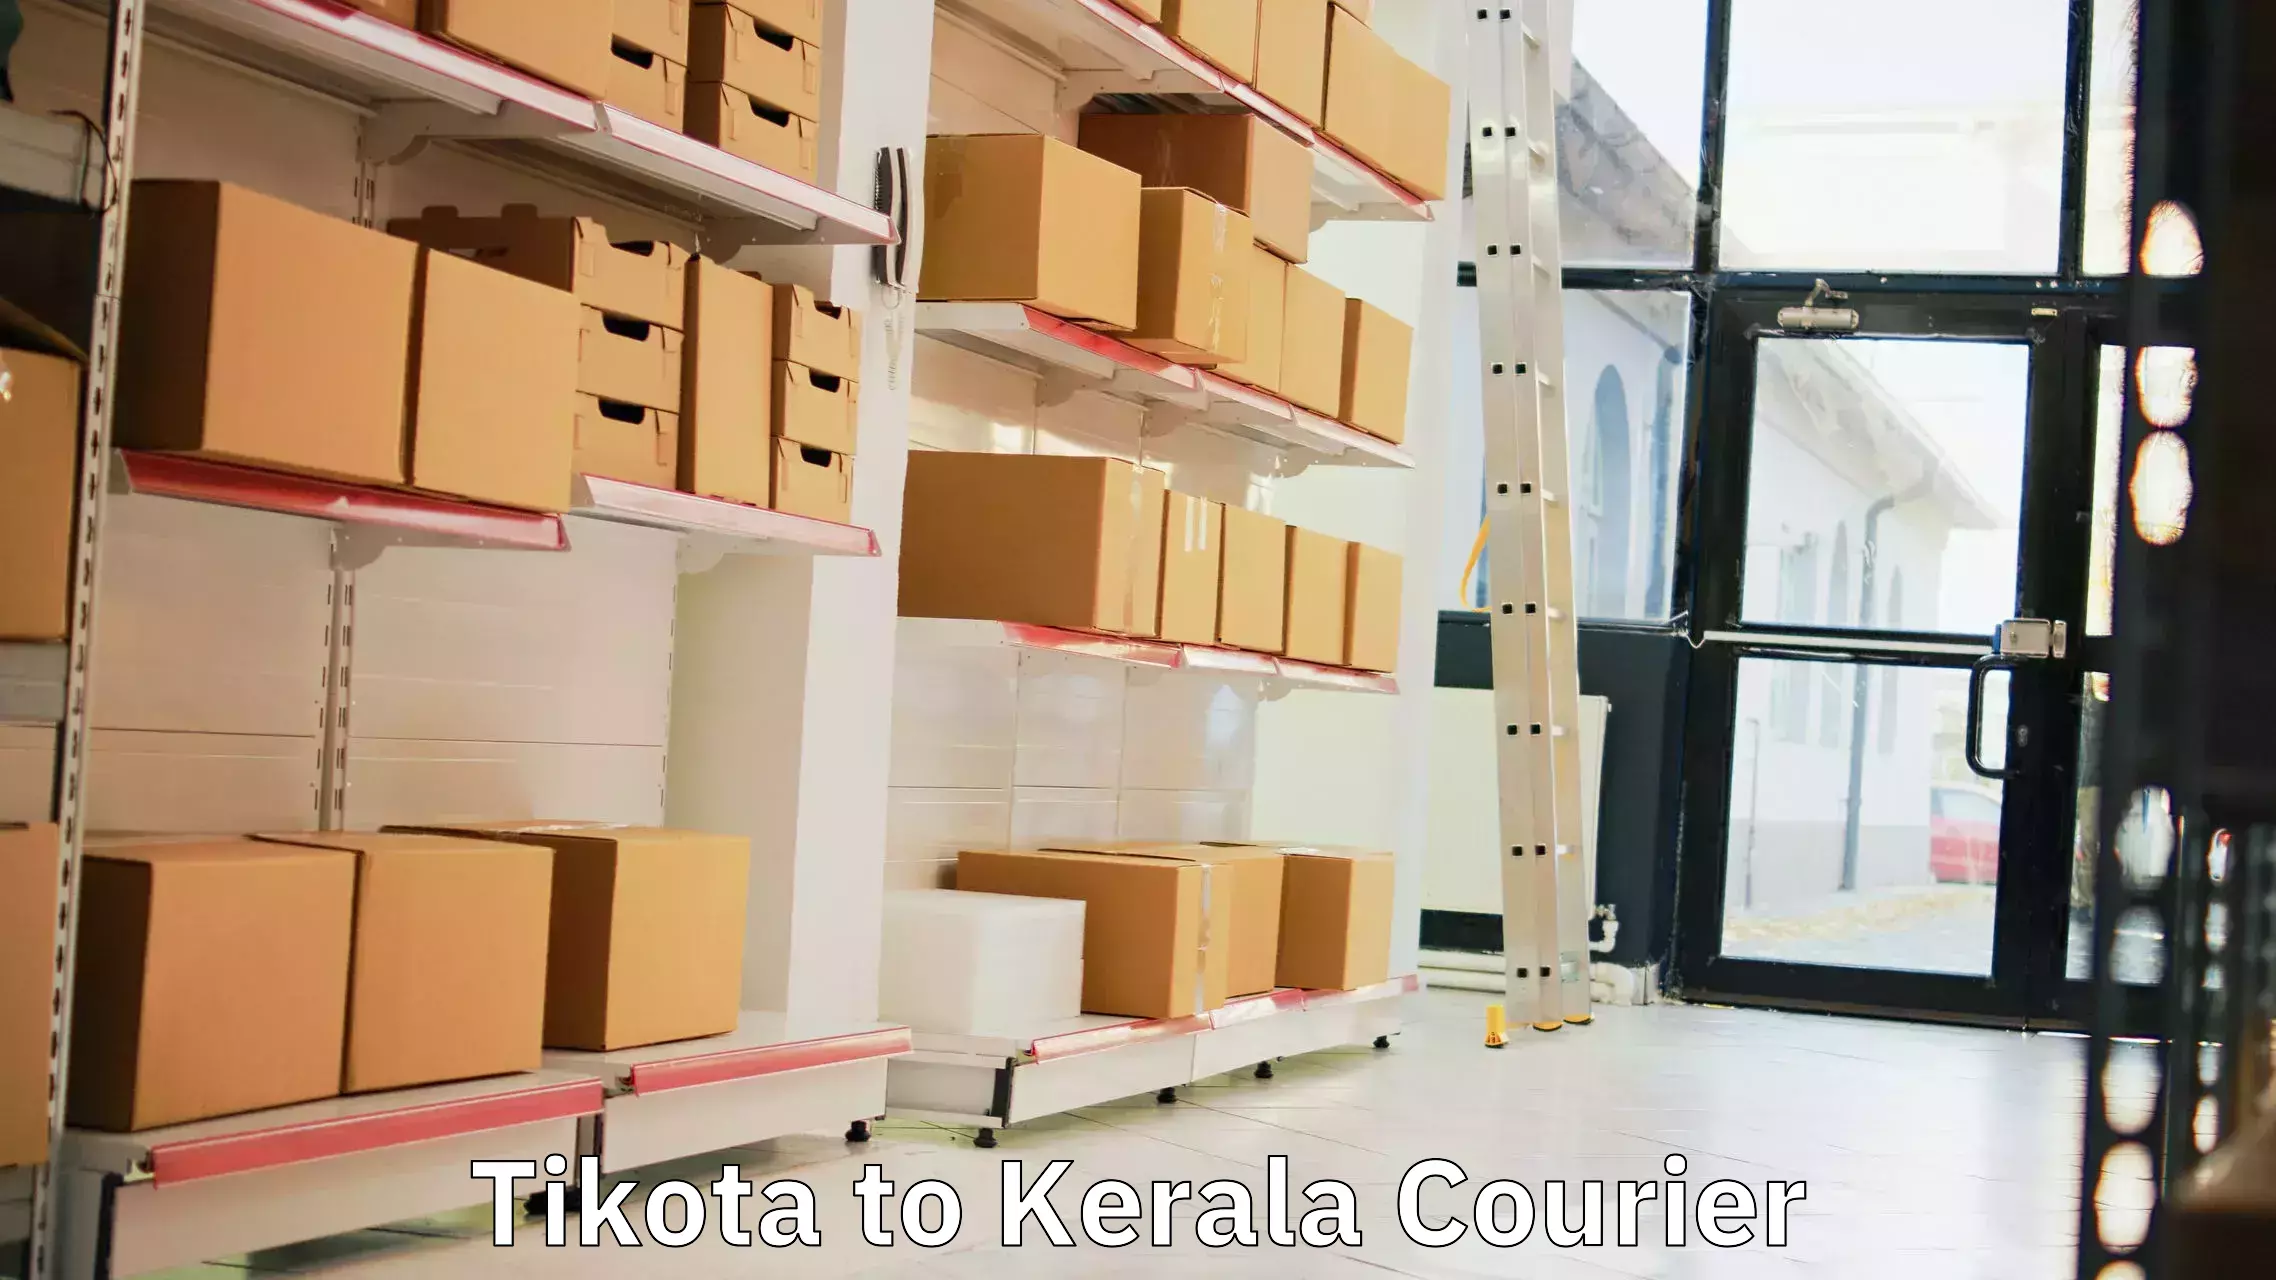 Enhanced tracking features Tikota to Kiliyanthara